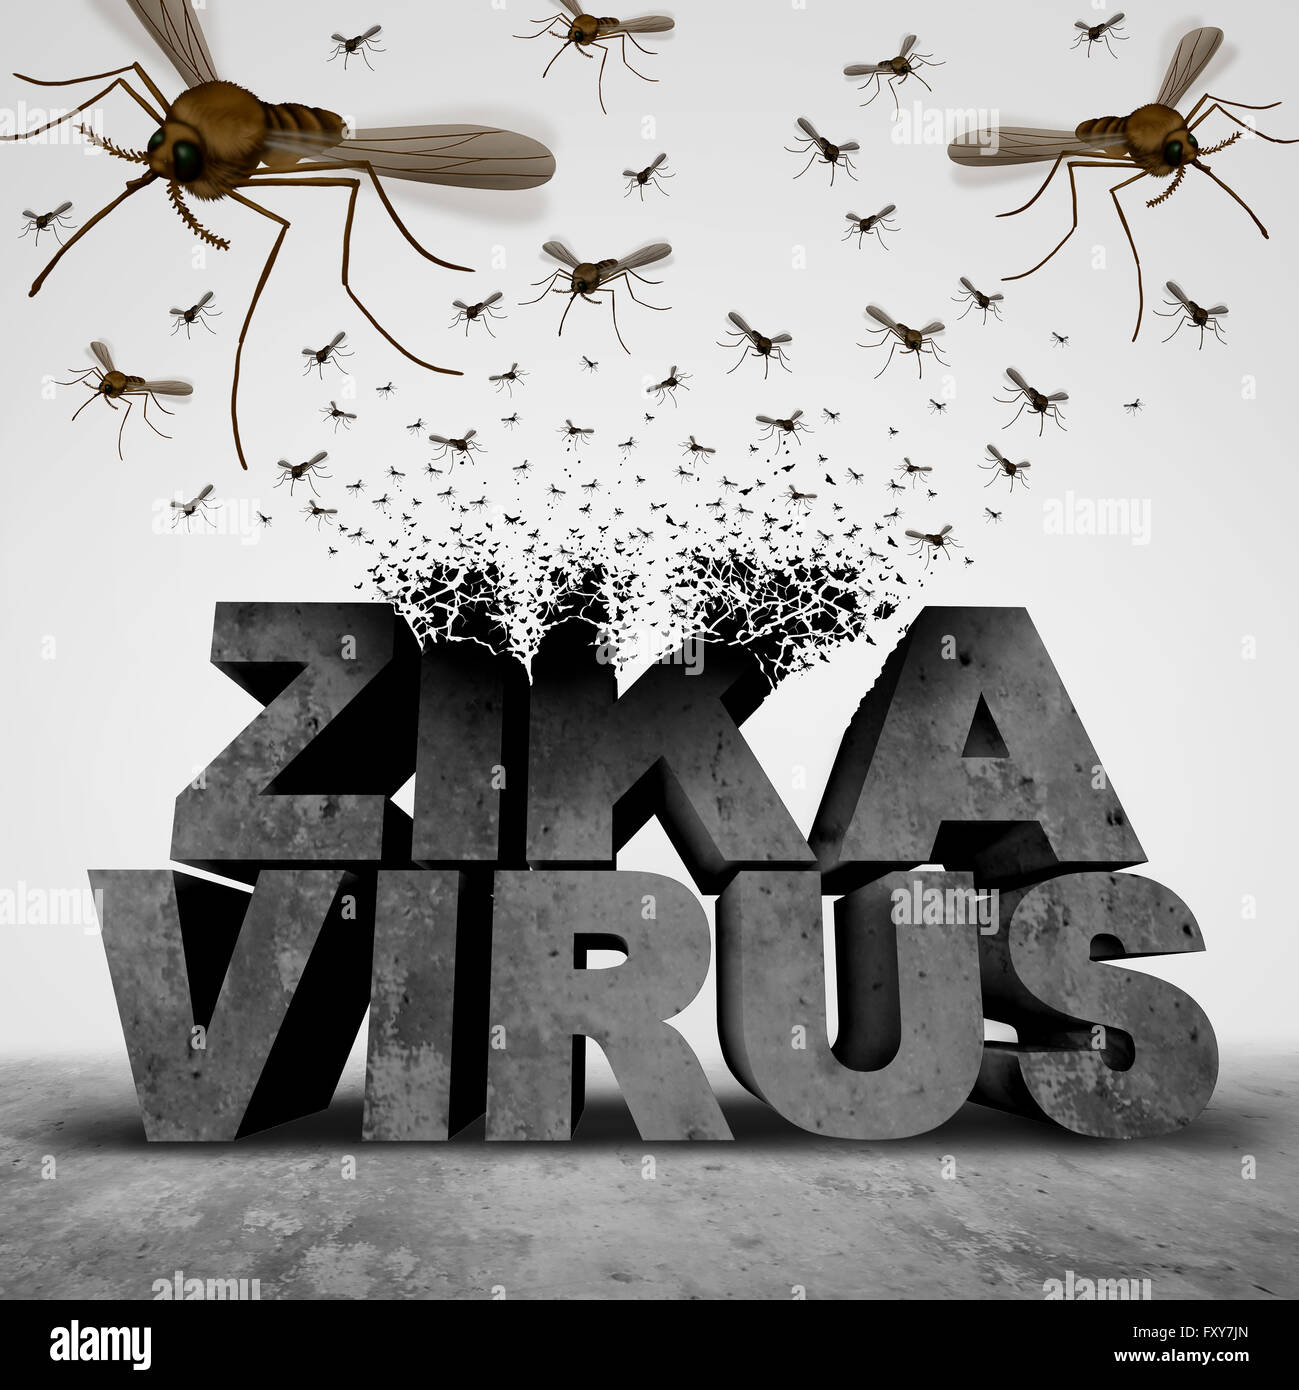 Peligro virus Zika concepto como una ilustración 3D transformar texto a un grupo de enjambres de mosquitos, la propagación de las enfermedades infecciosas como un brote epidémico de riesgo para la salud pública y el temor de un símbolo. Foto de stock